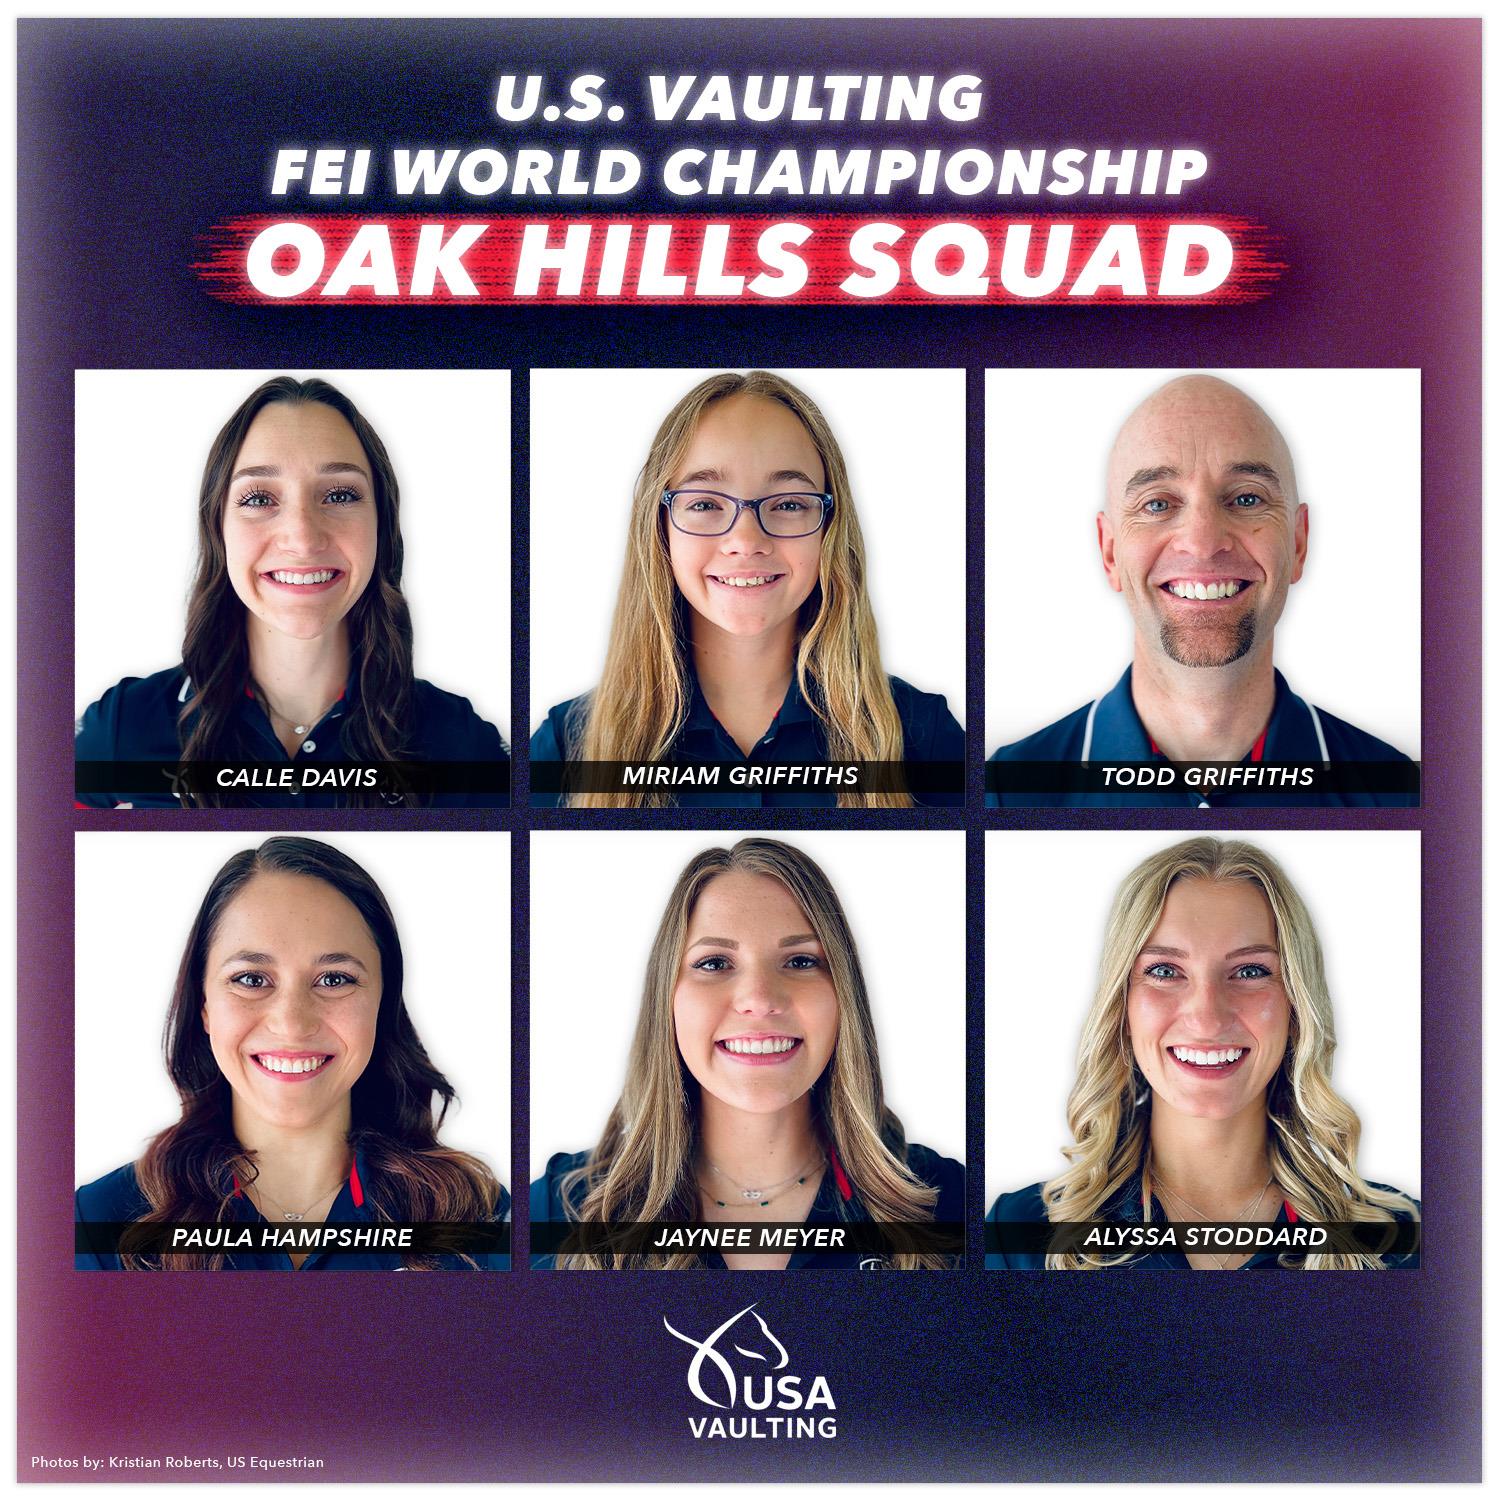 Oak Hills Squad vaulters